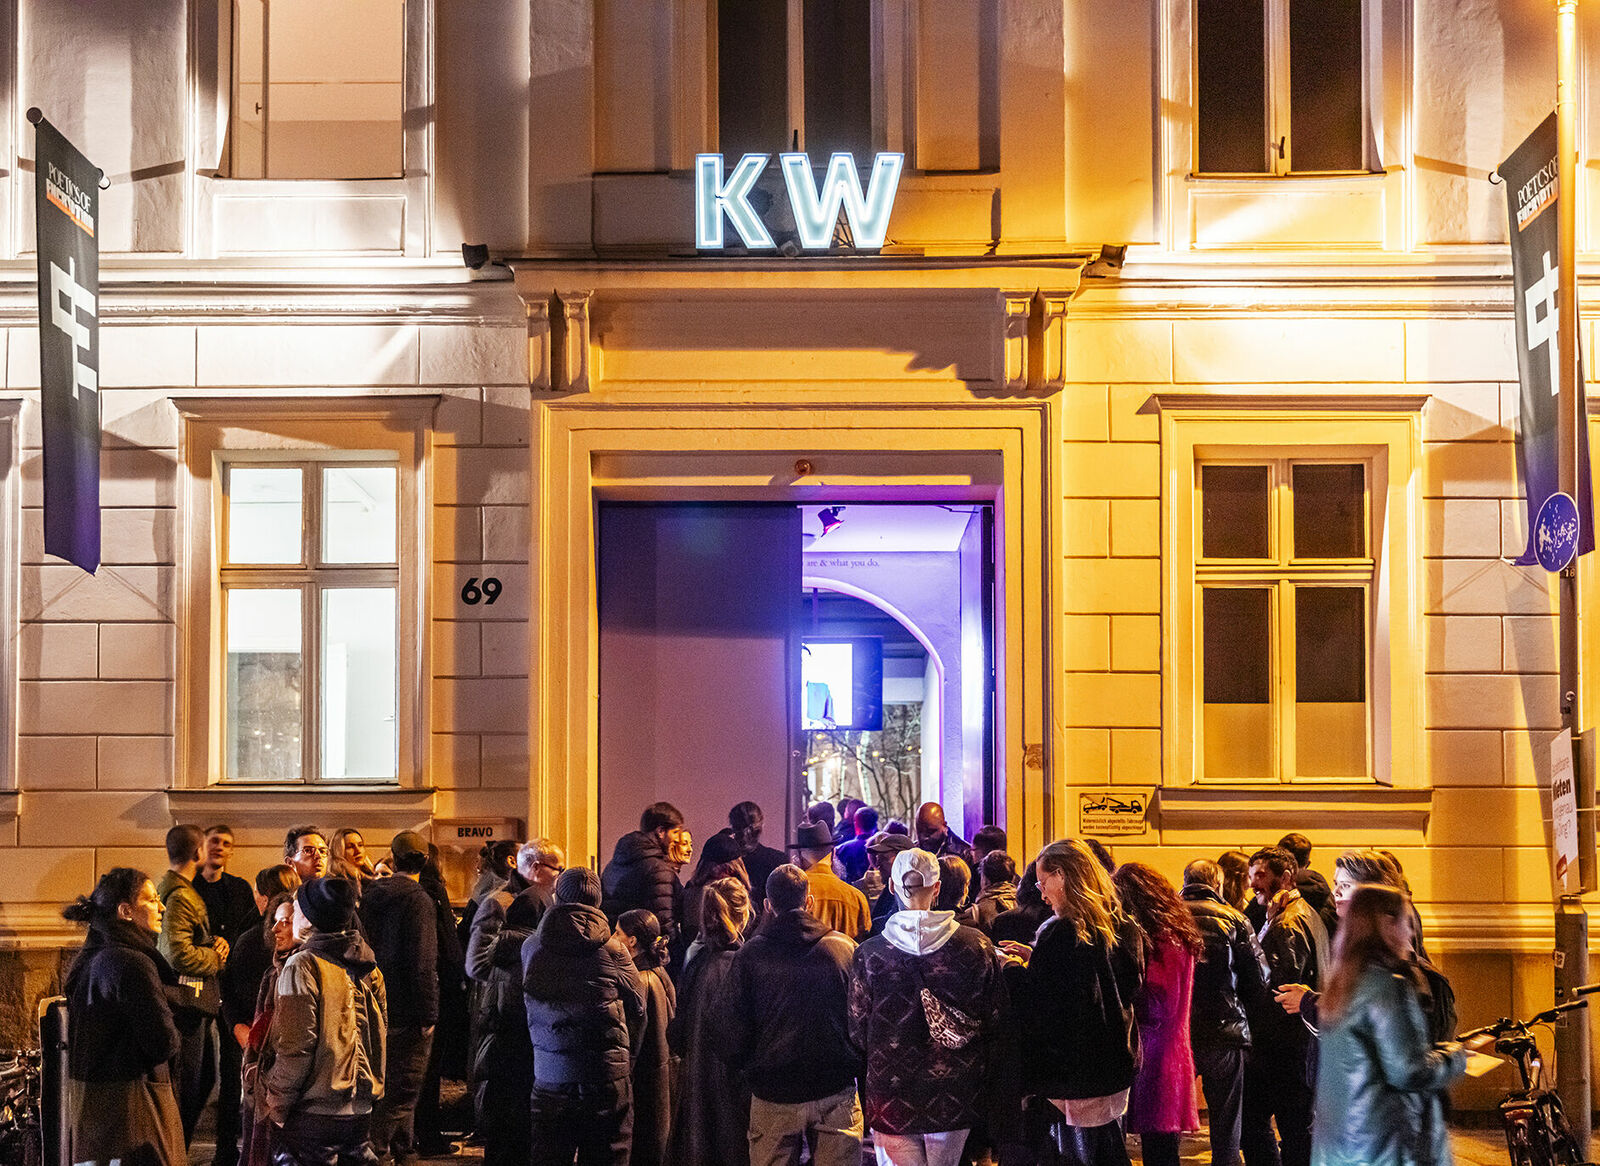 Menschenmenge vor dem Eingang eines Gebäudes mit der Leuchtreklame "KW" bei Nacht.